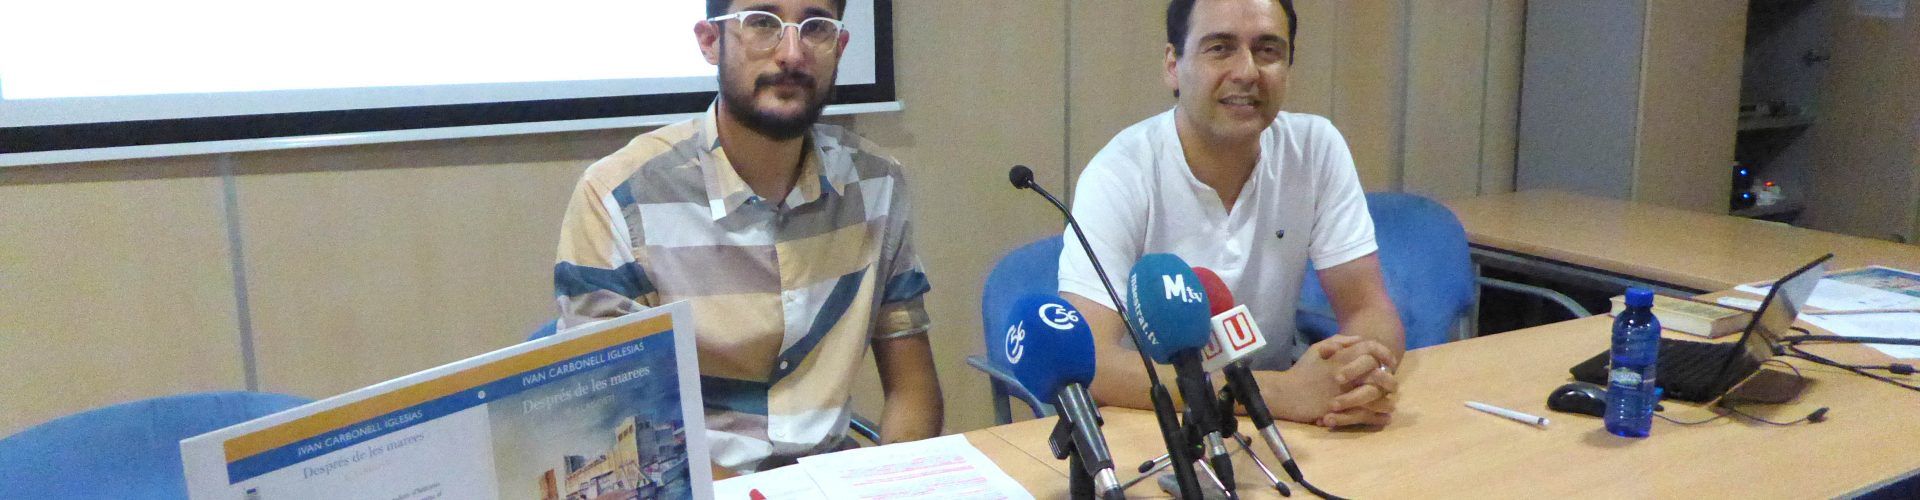 El llagostí i Vinaròs protagonitzen el relat de la campanya “Llegir en valencià, la nostra cuina”